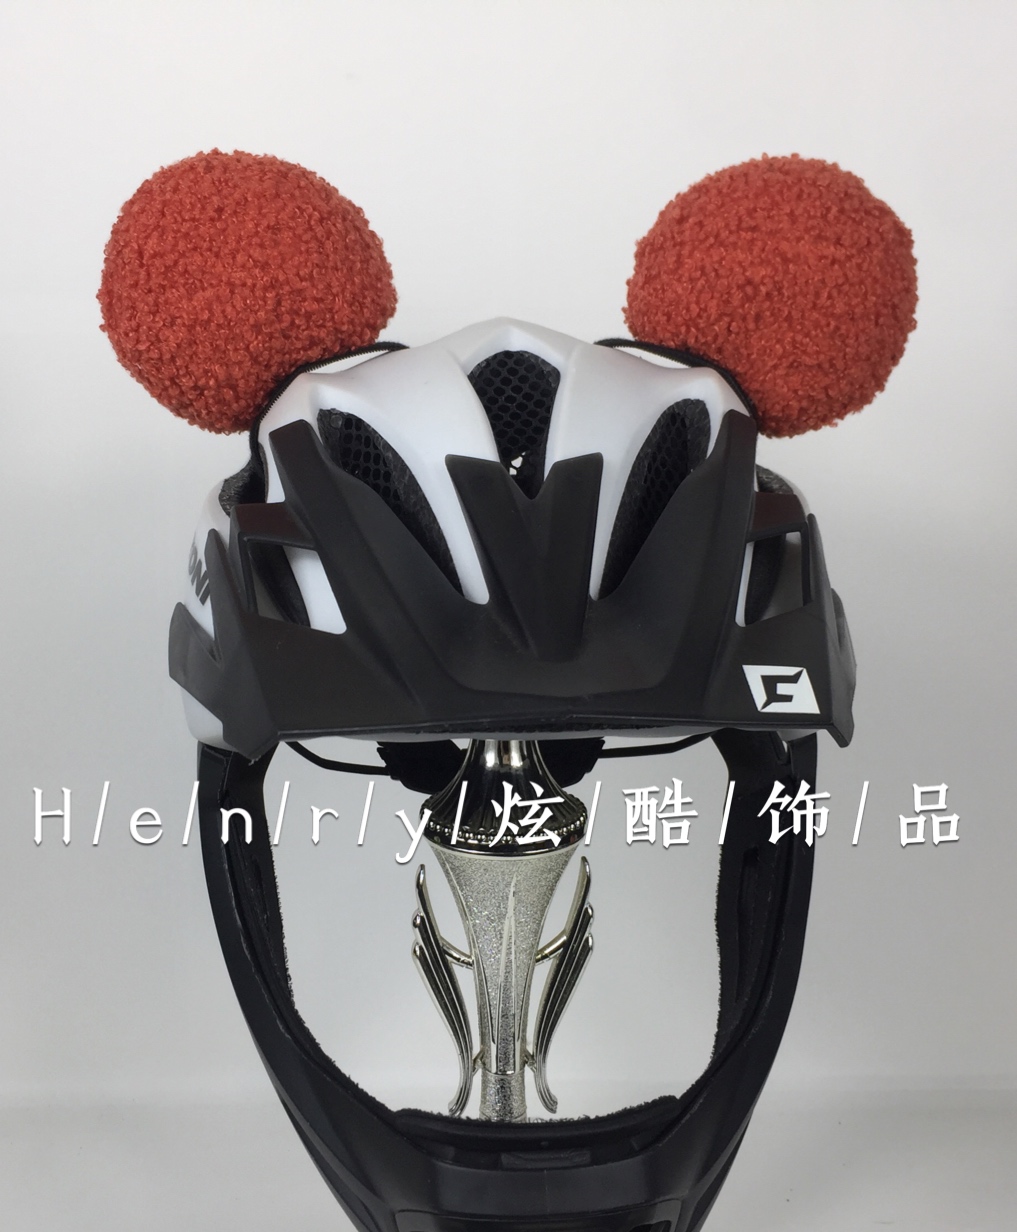 成人儿童平衡车滑步摩托车电动车头盔装饰品头饰米奇耳朵绒球泰迪